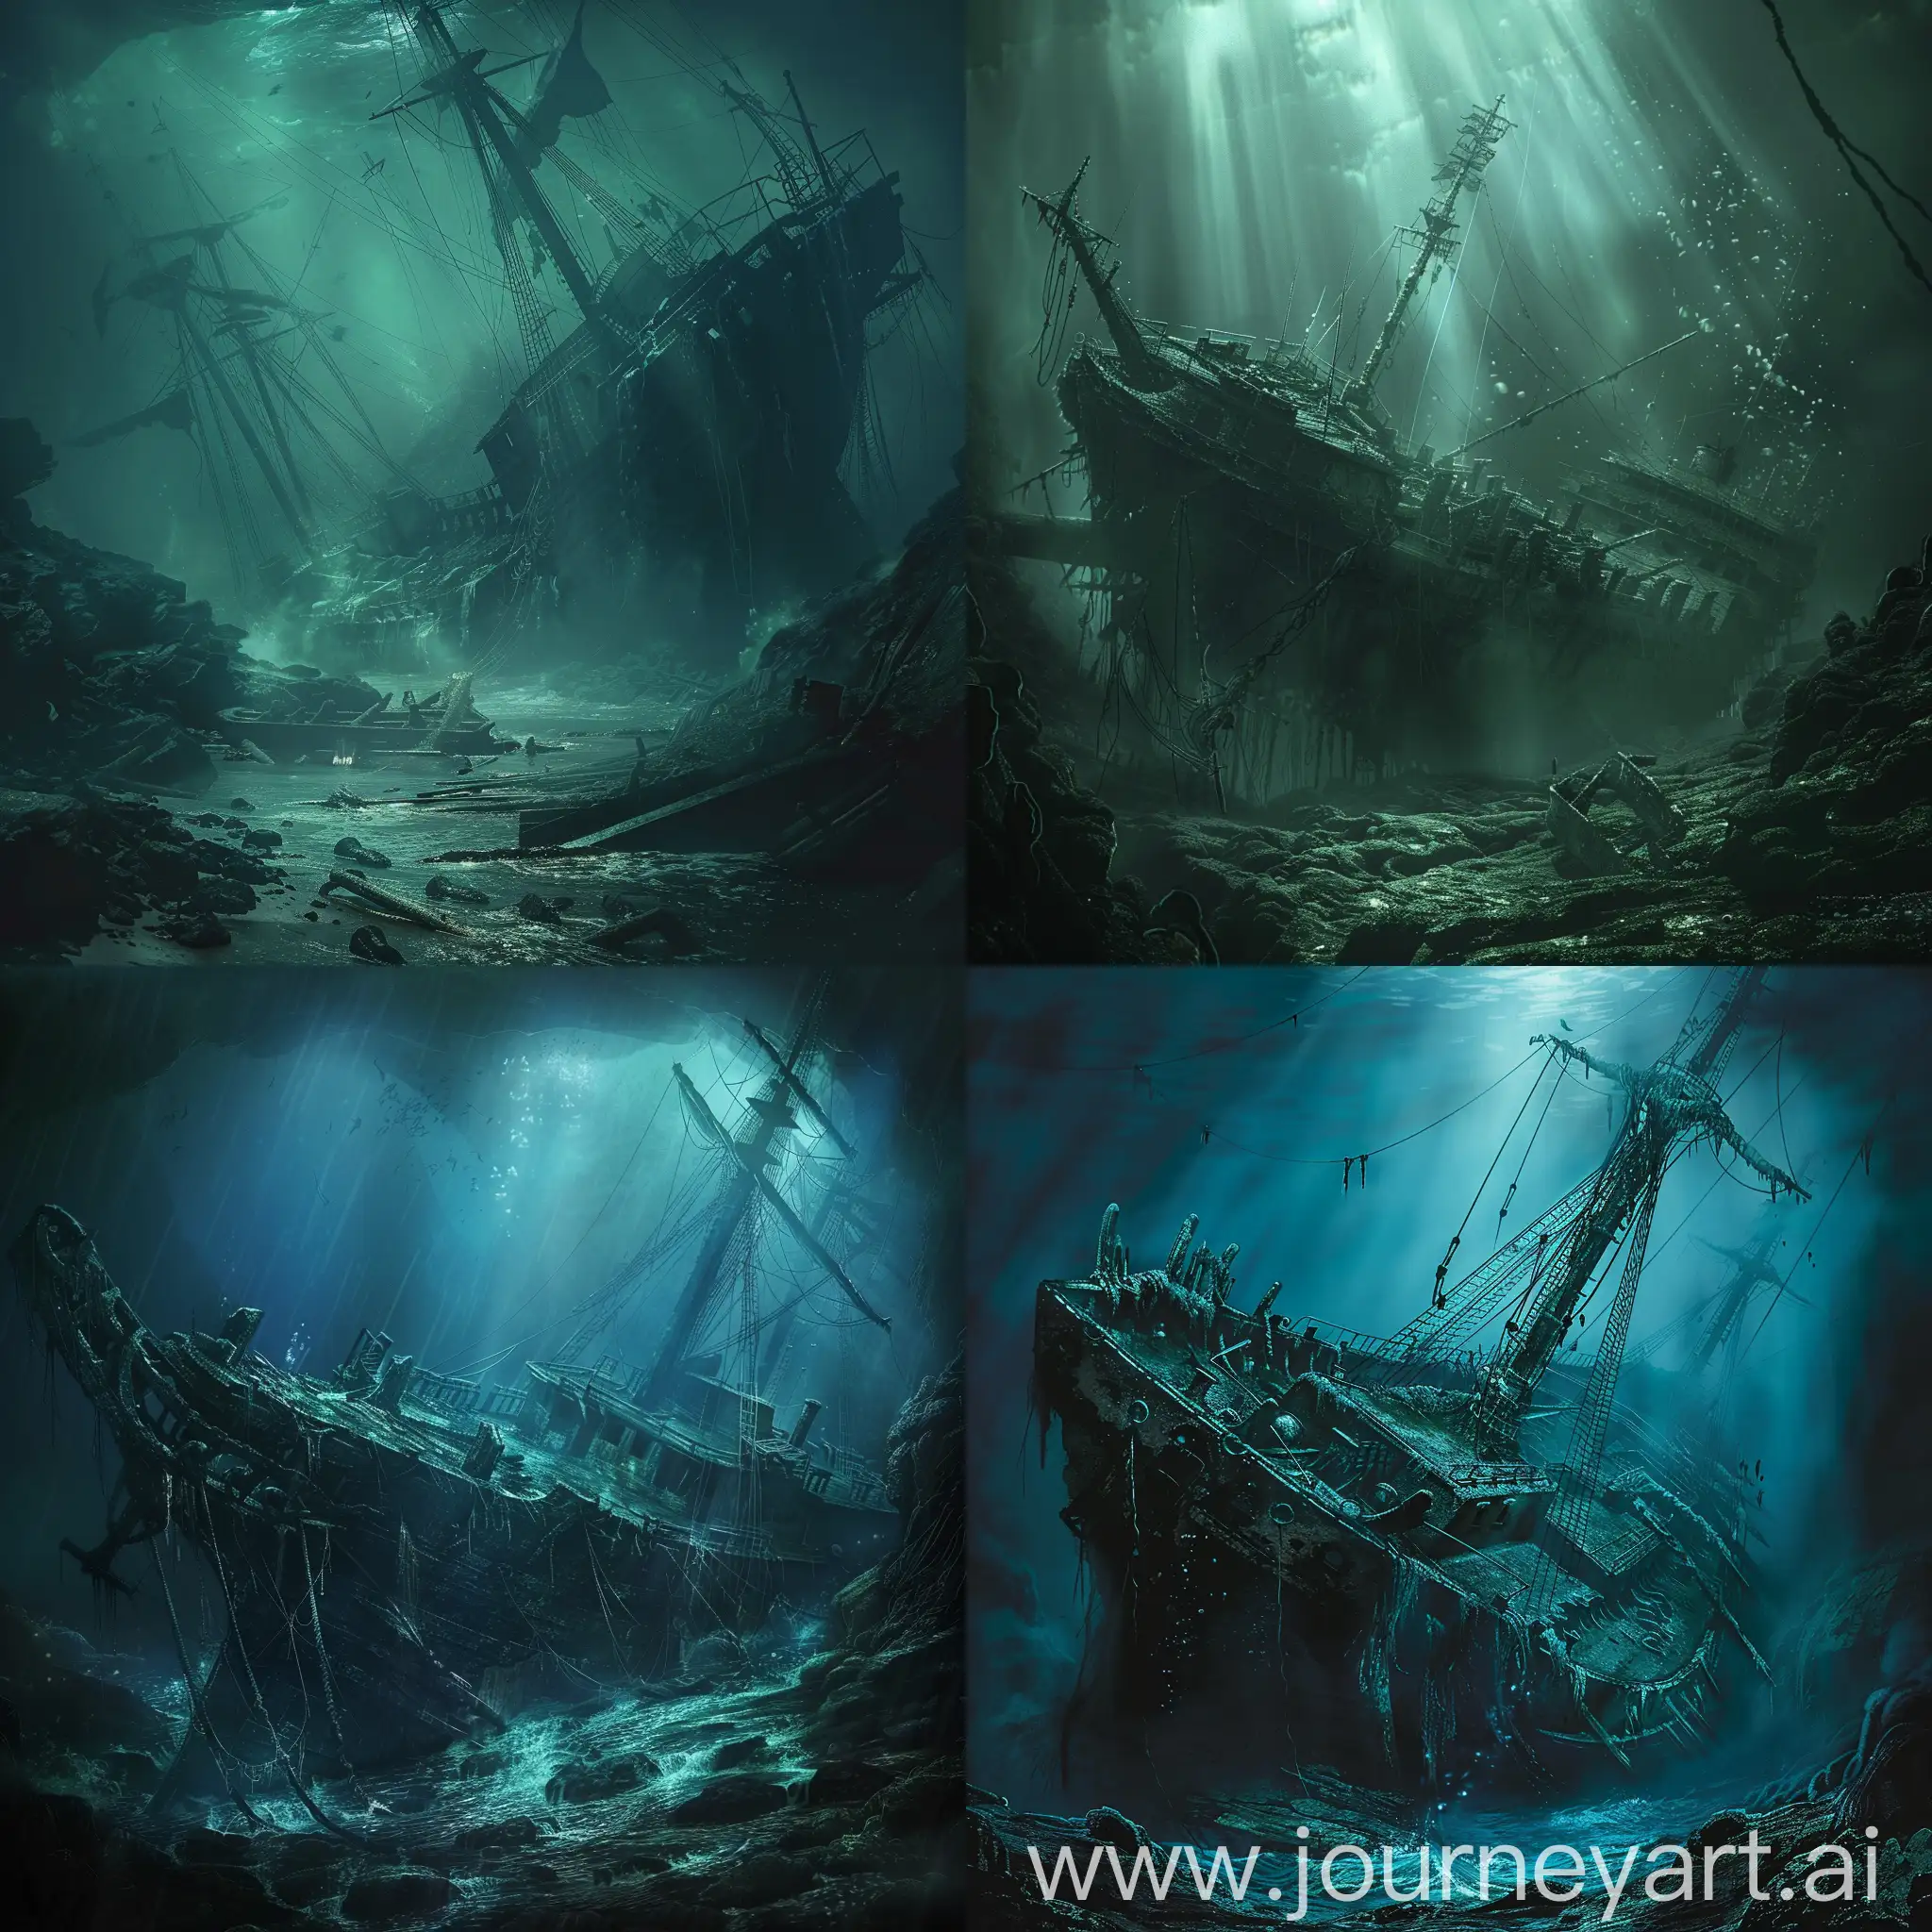 Eerie-Shipwreck-Underwater-Haunting-Scene-of-a-Sunken-Vessel